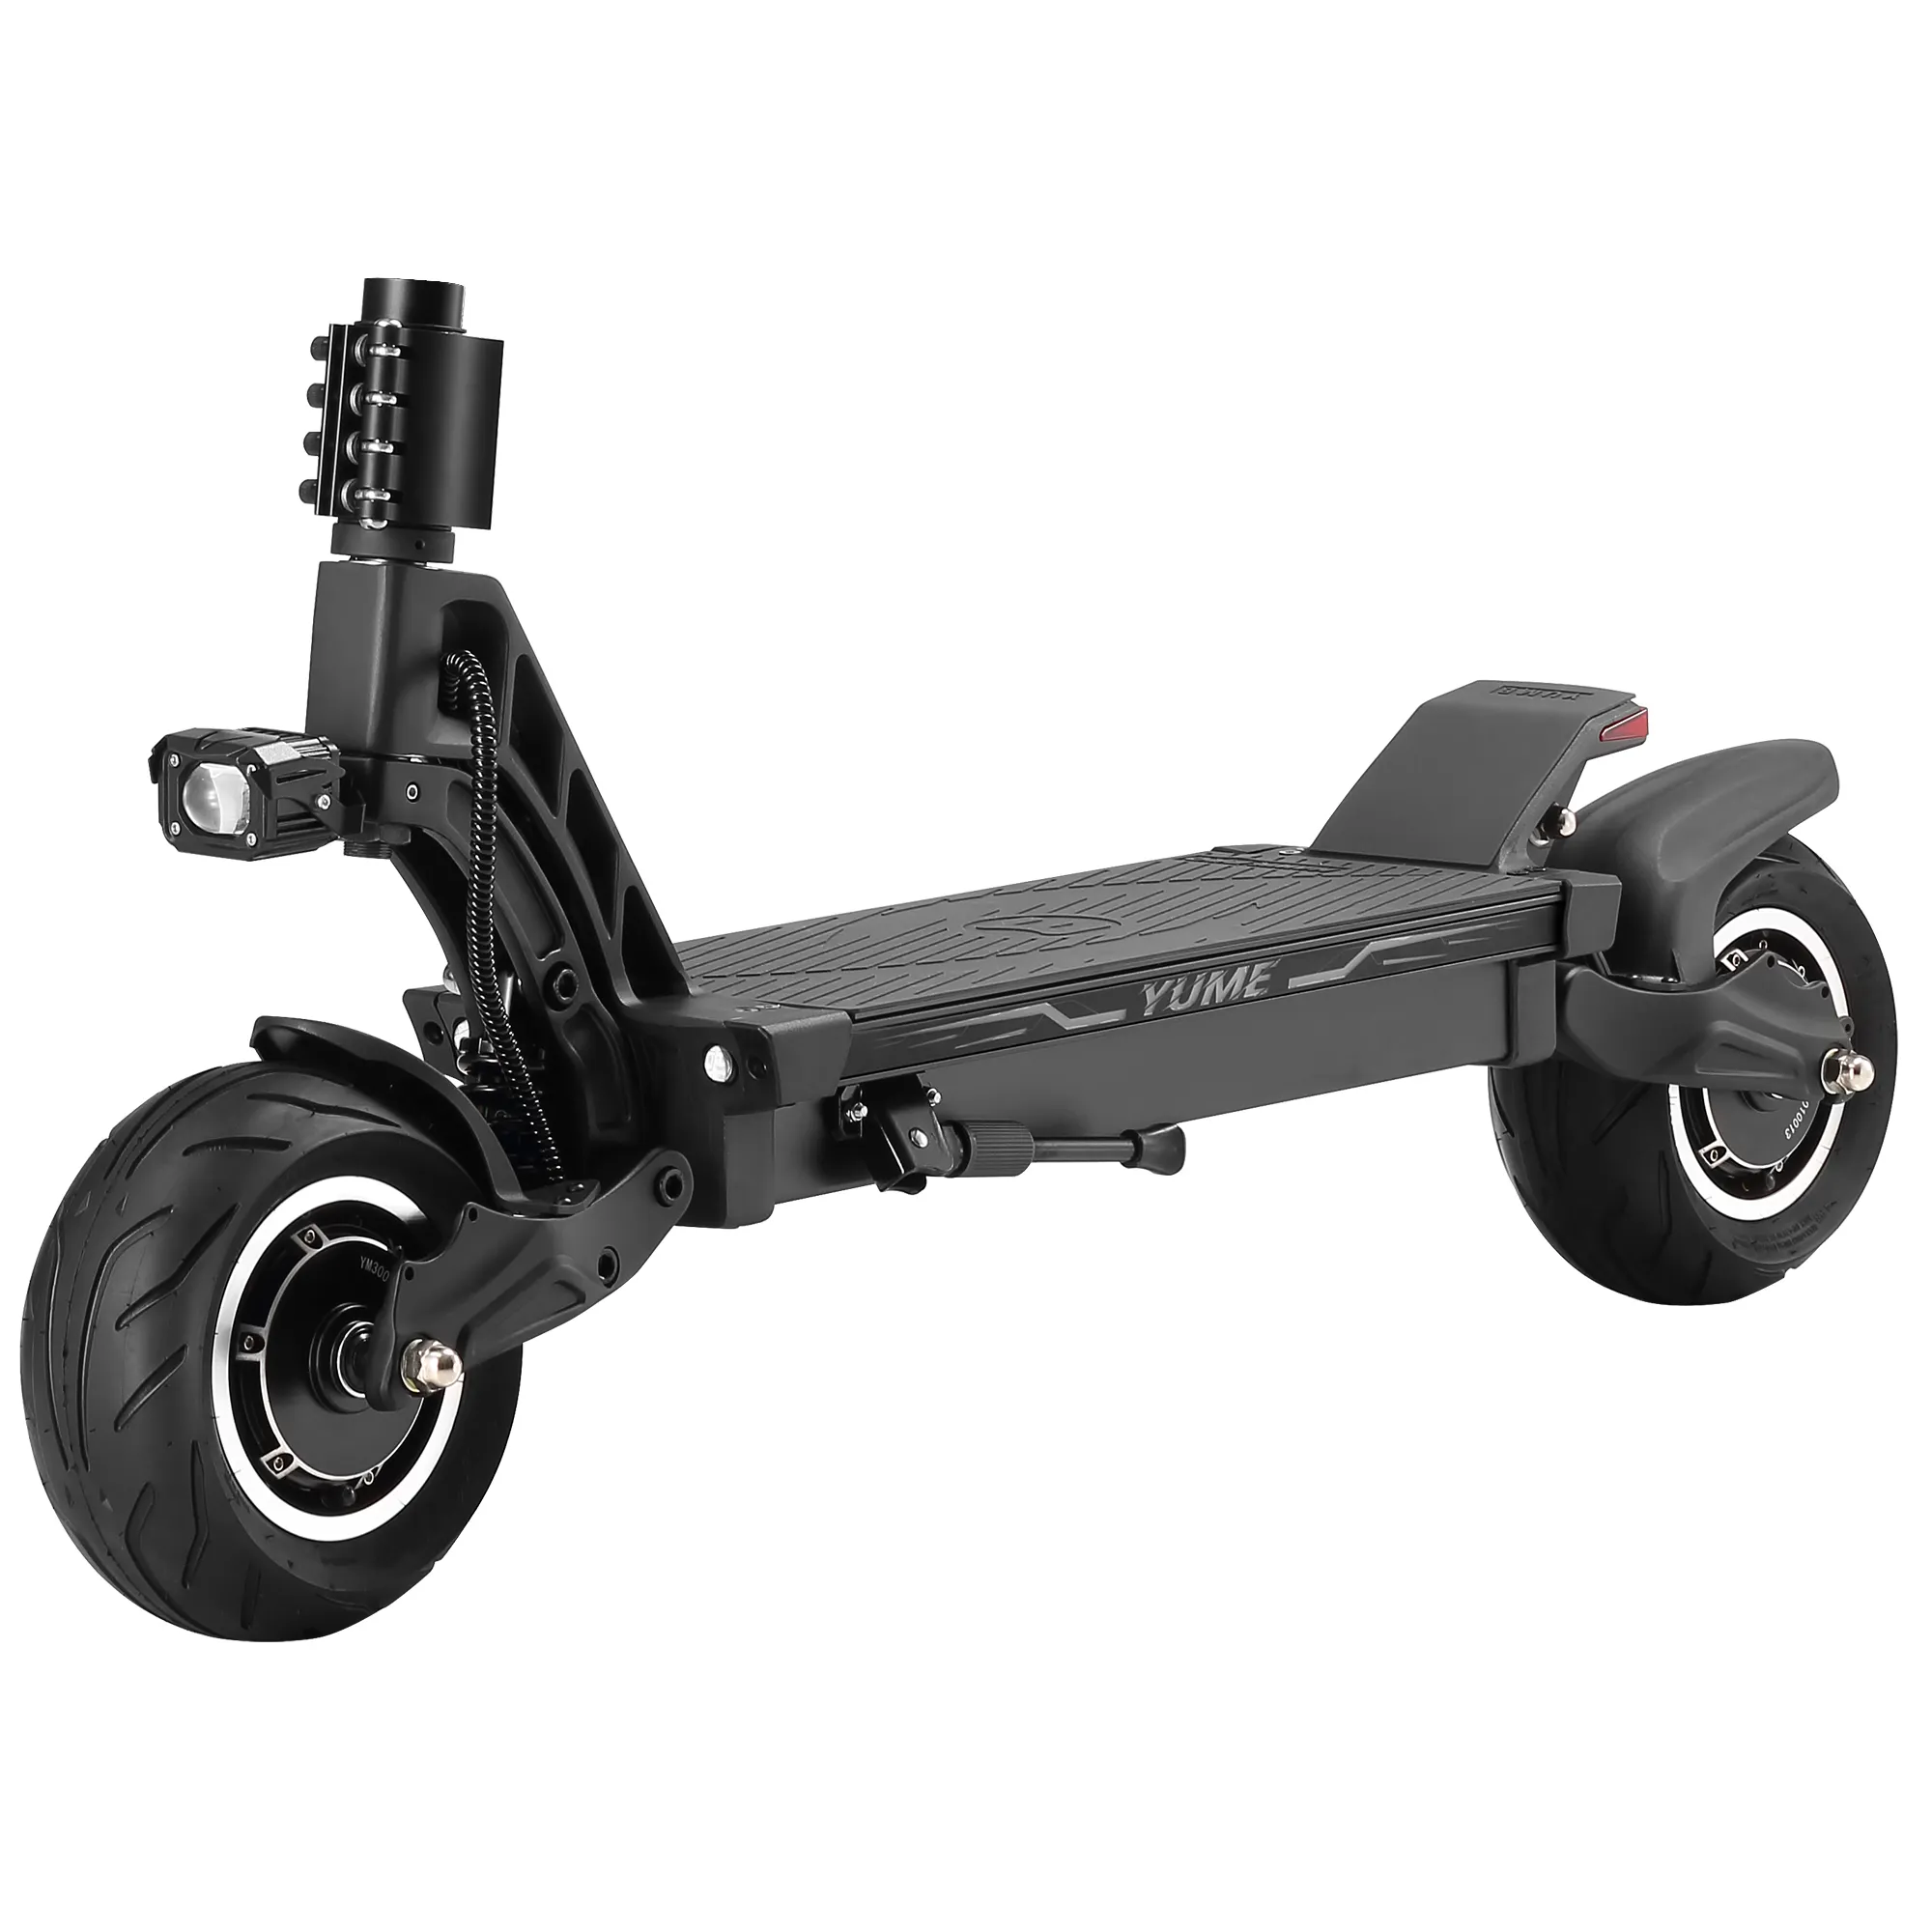 YUME HAWK Pro toptan büyük güç 60v 6000w çift motor 10 inç yağ lastik elektrikli katlanabilir scooter yetişkin çıkarılabilir koltuk ile